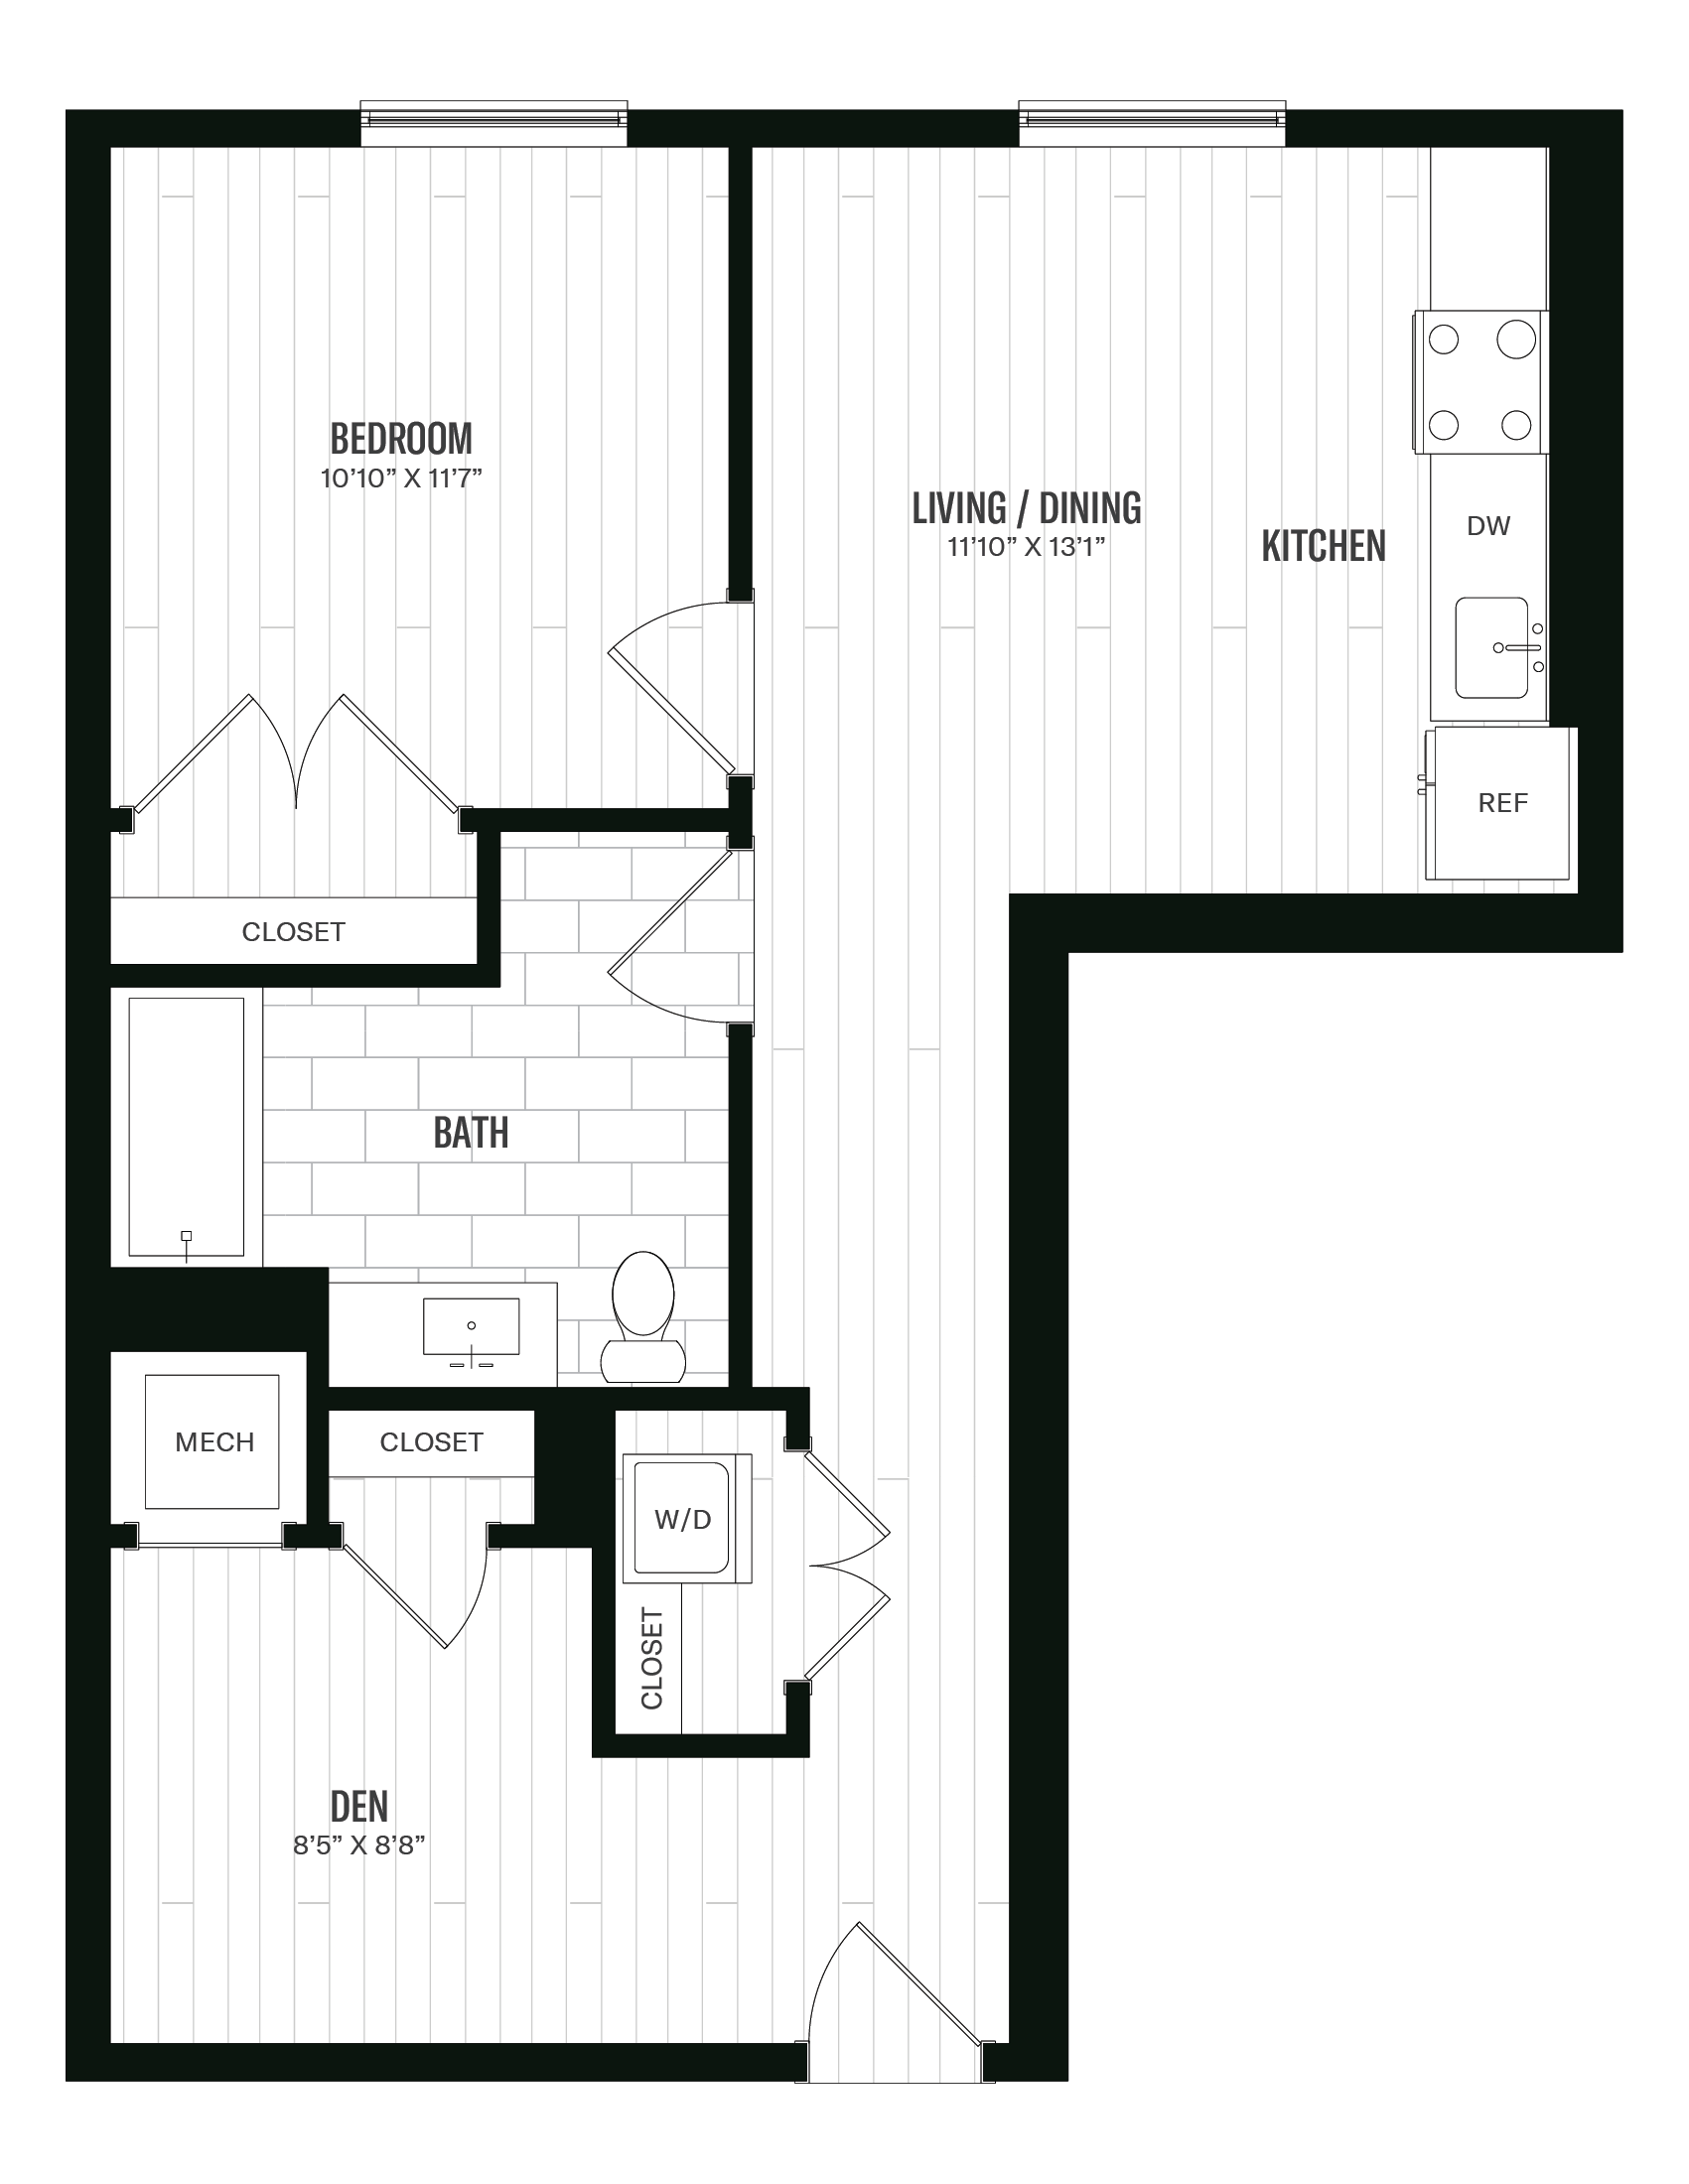 Floorplan image of unit 464